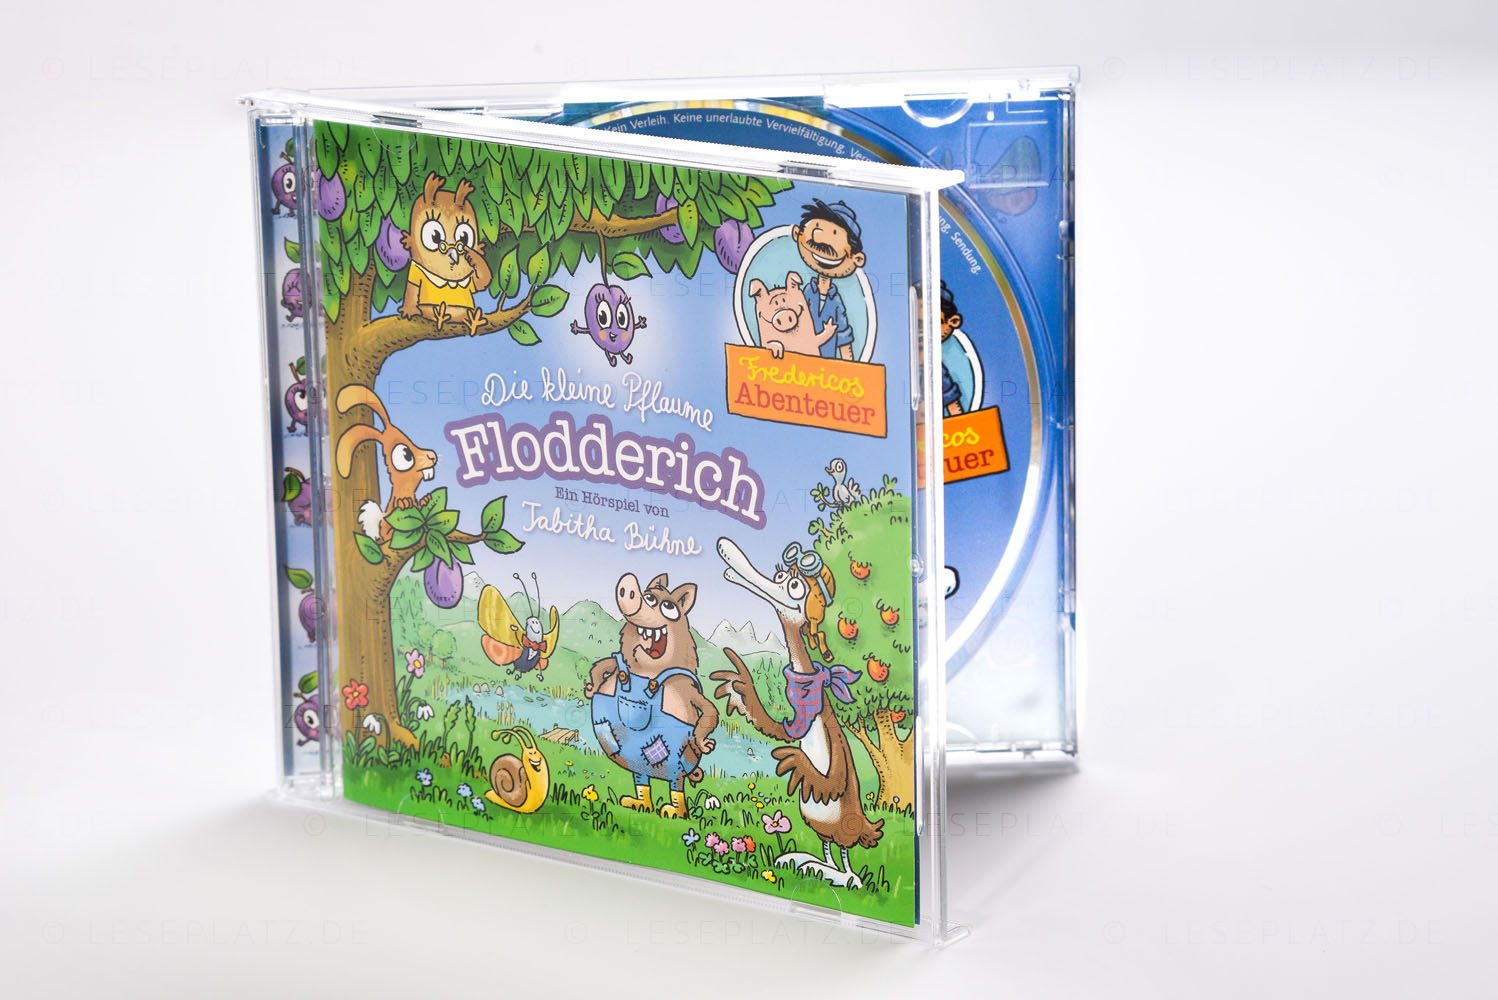 Die kleine Pflaume Flodderich - Hörspiel-CD